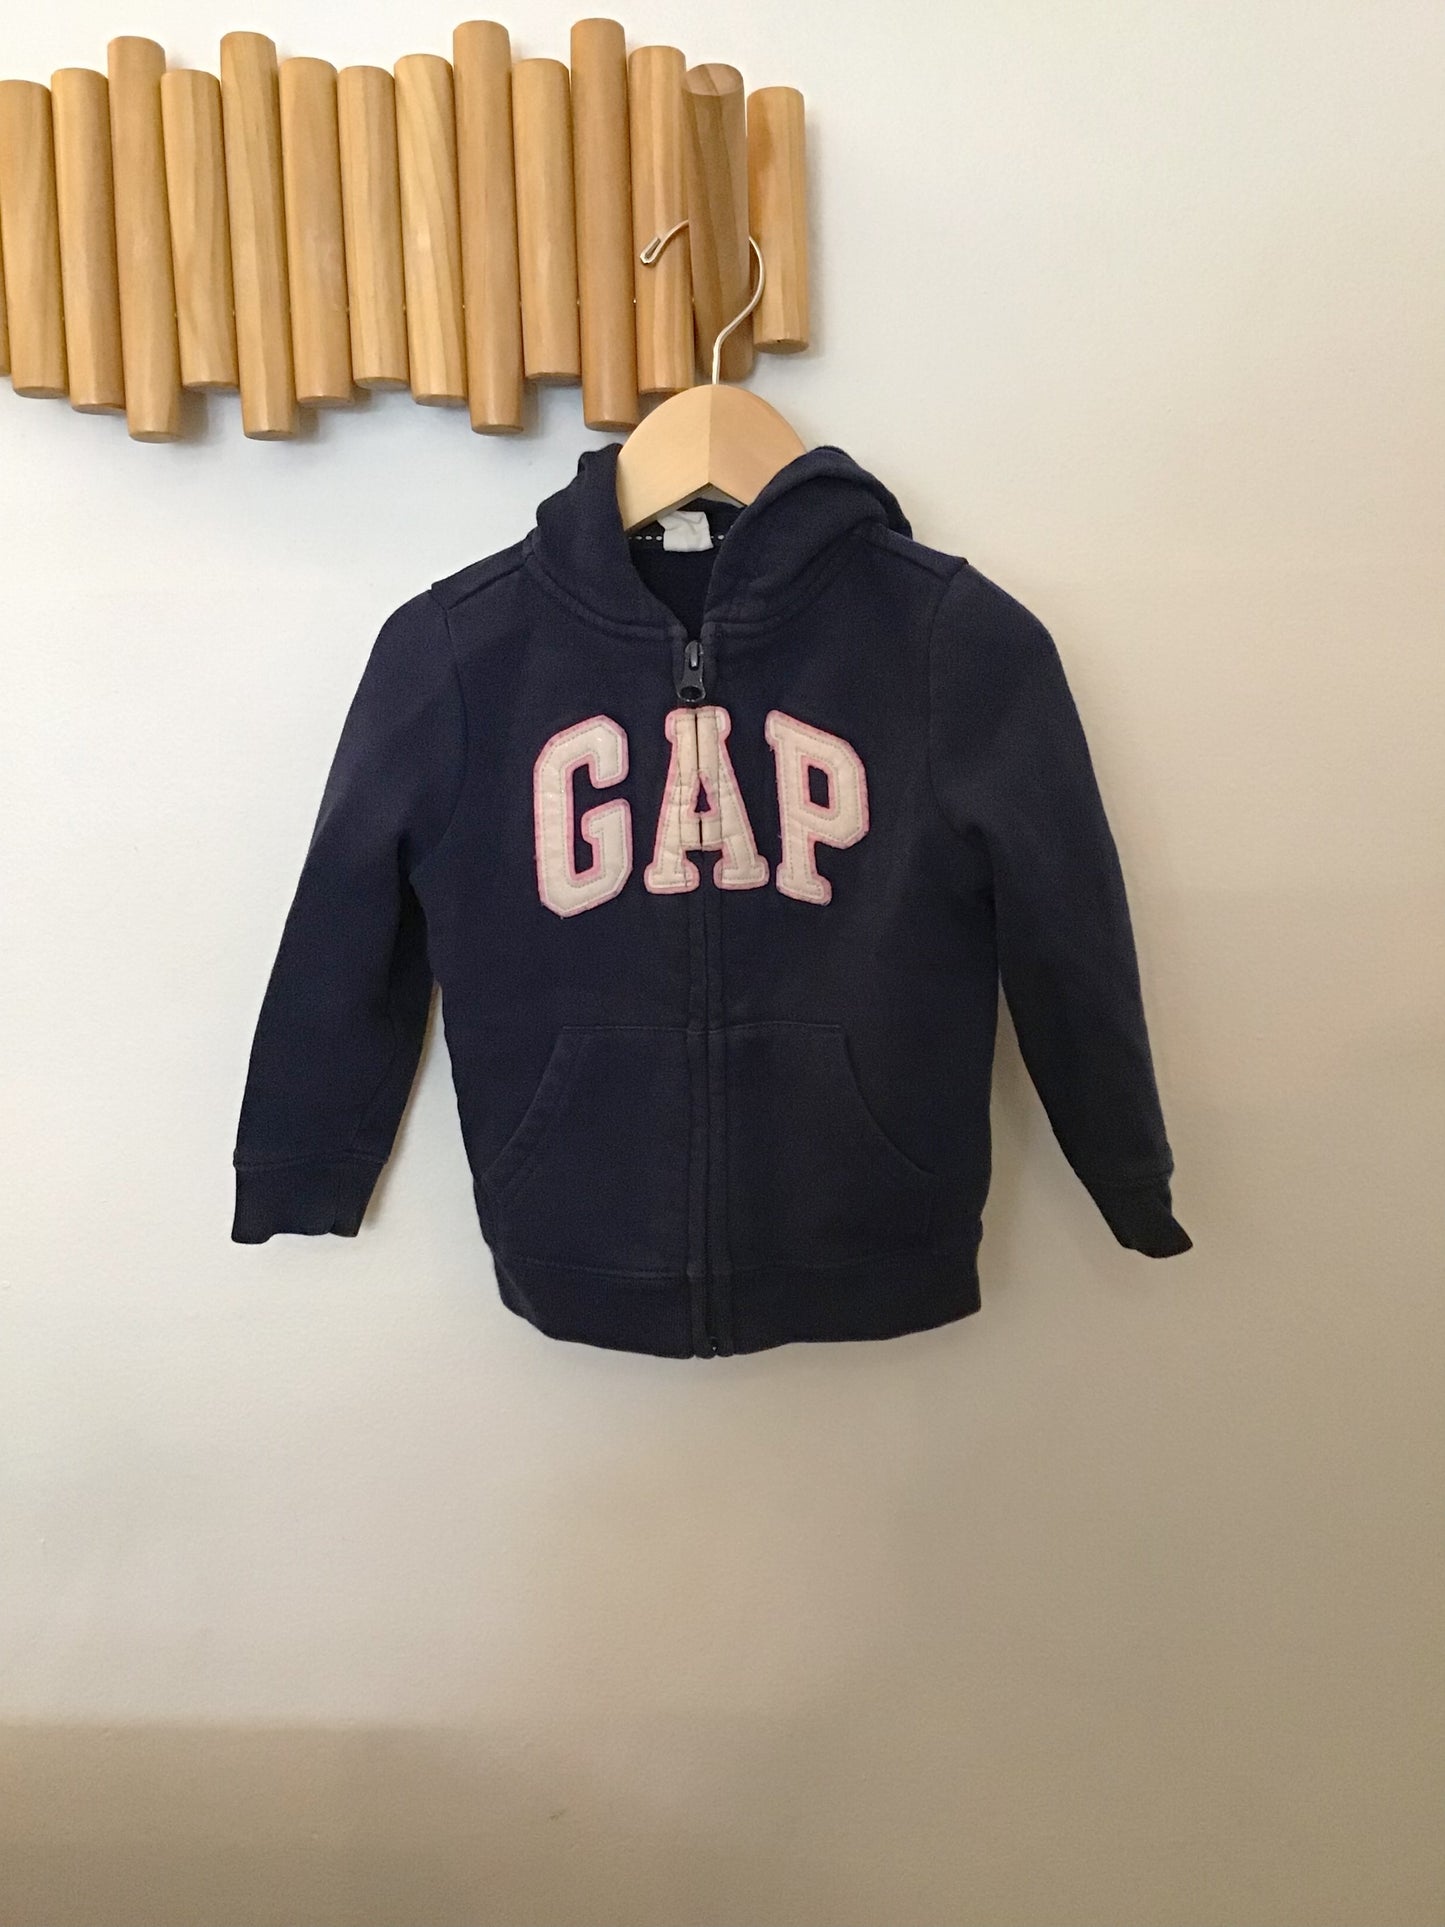 Gap sparkly sweatshirt 5y